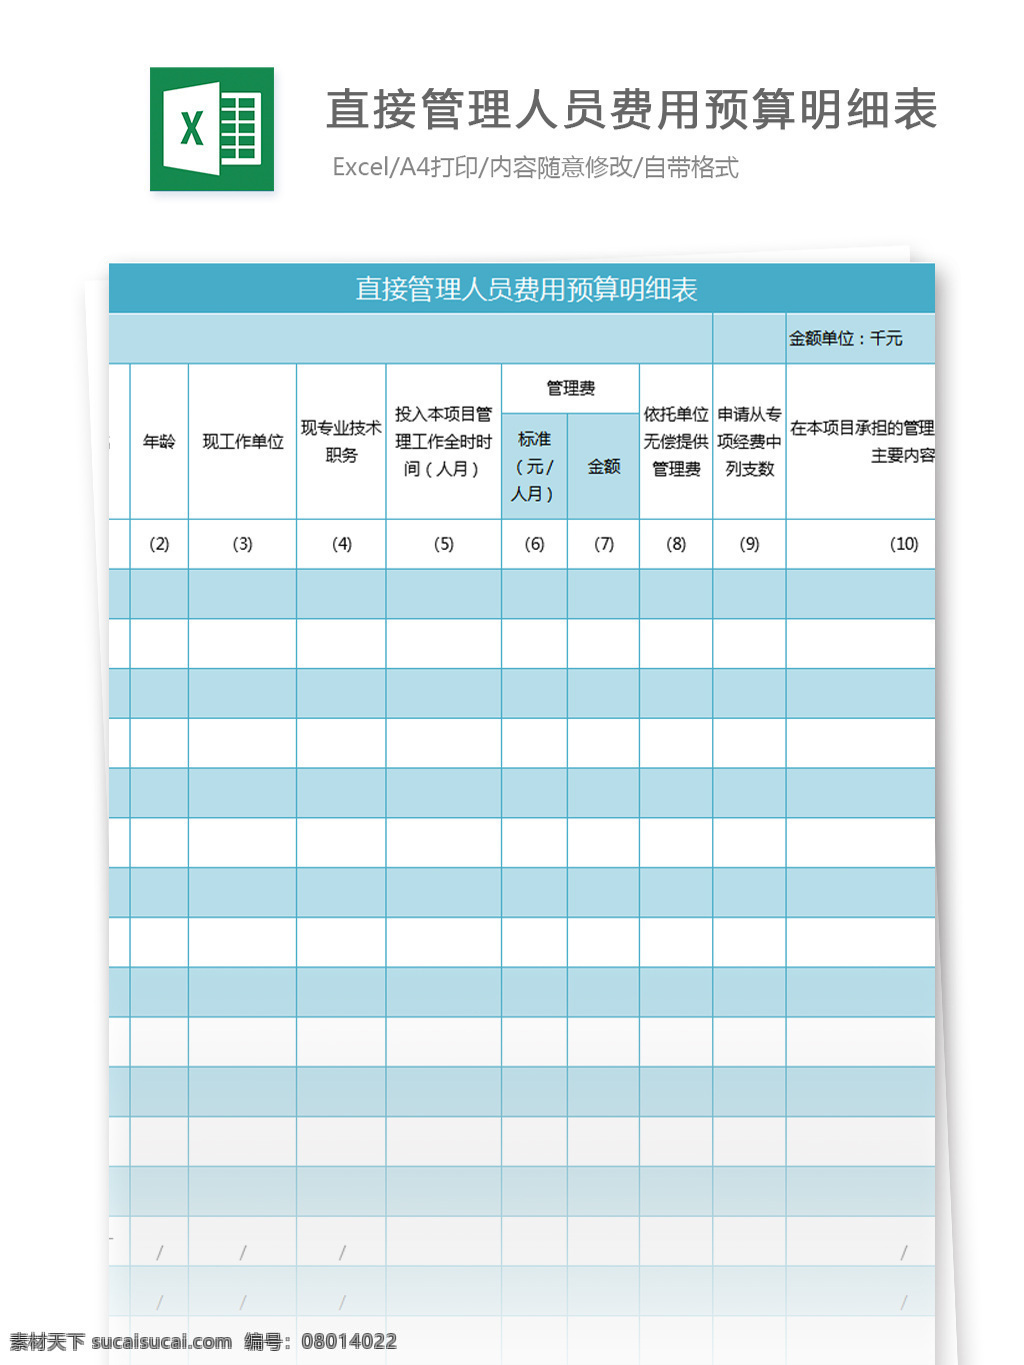 直接 管理 人员 费用 预算 明细表 excel 模板 表格模板 图表 表格设计 表格